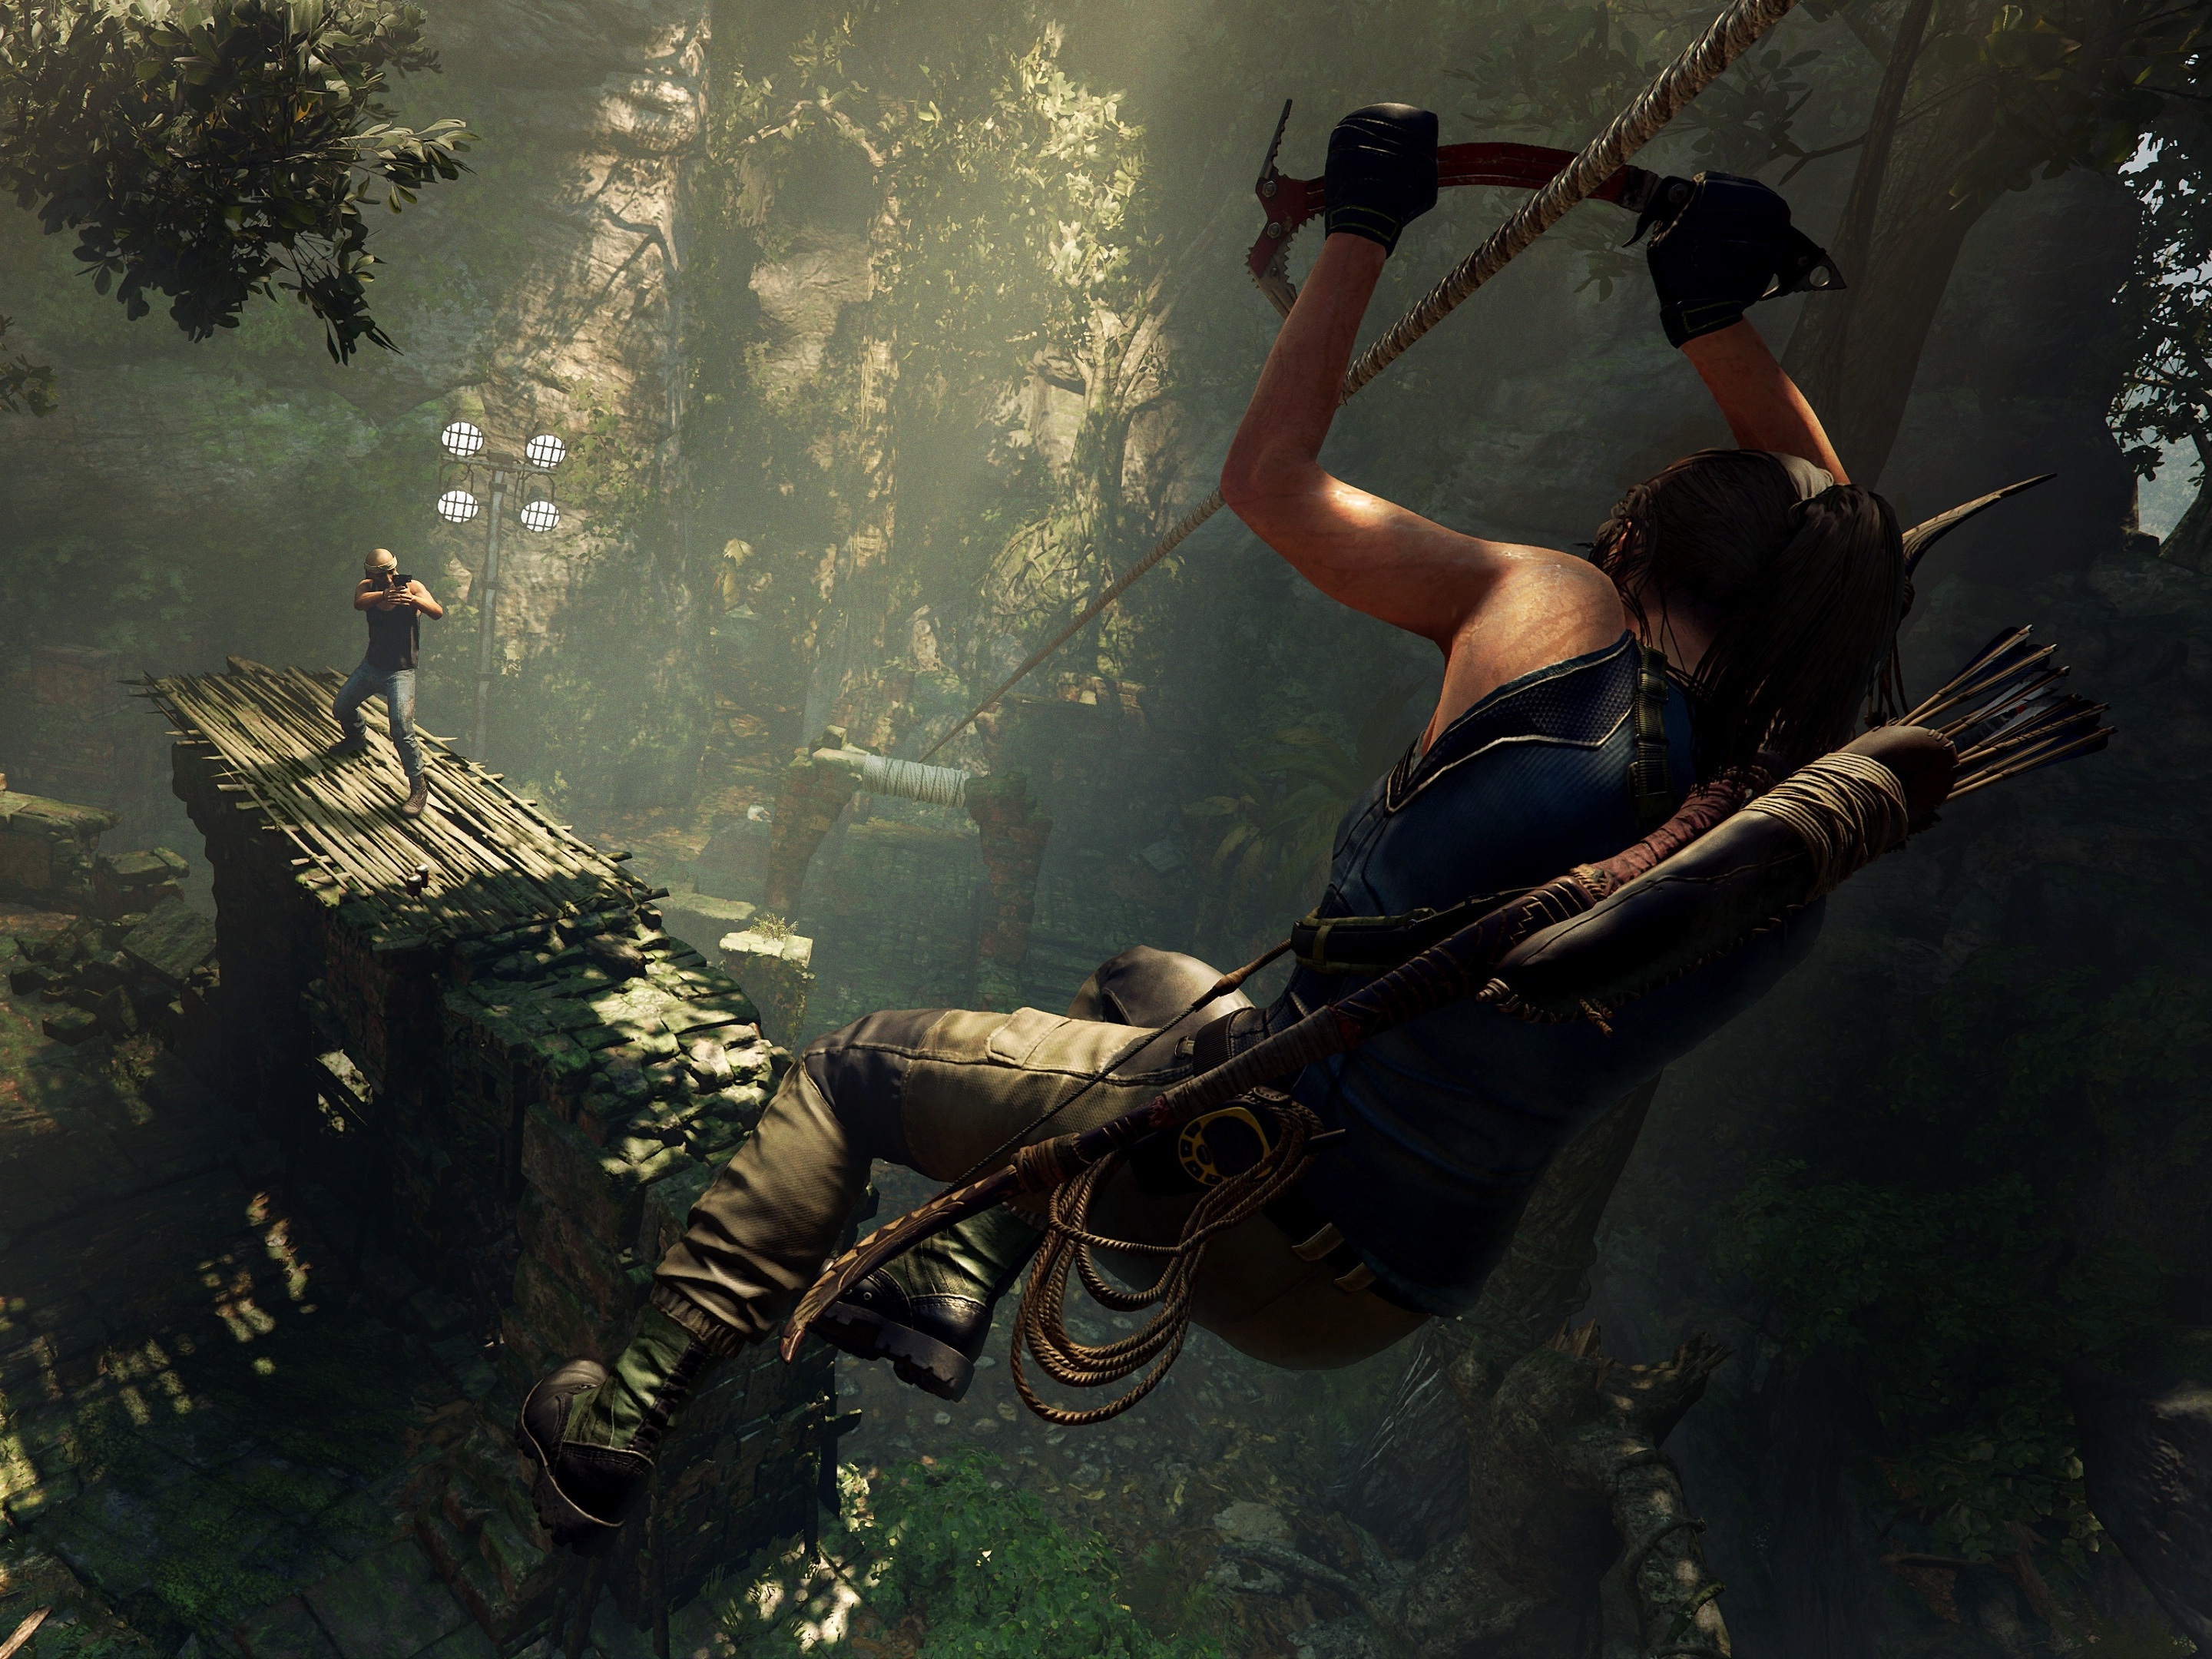 Novo vídeo mostra a evolução de Lara Croft até Shadow of the Tomb